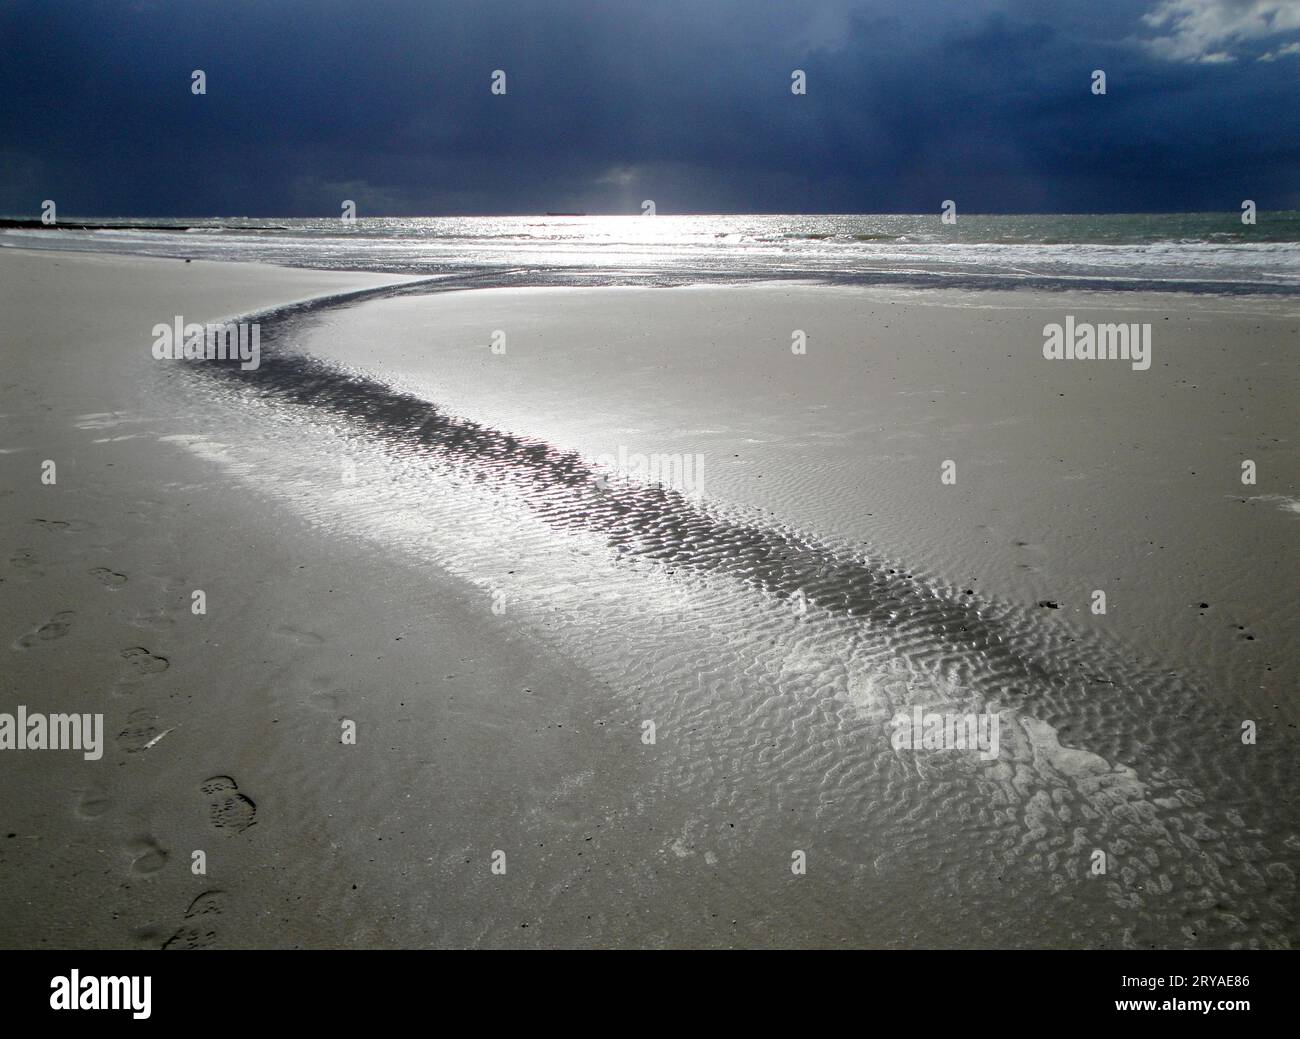 Gewitterstimmung an der Nordsee; drohend schwarze Wolken, Strand glänzt in letzten Sonnenstrahlen * dark storm clouds looming over sunny beach Stock Photo